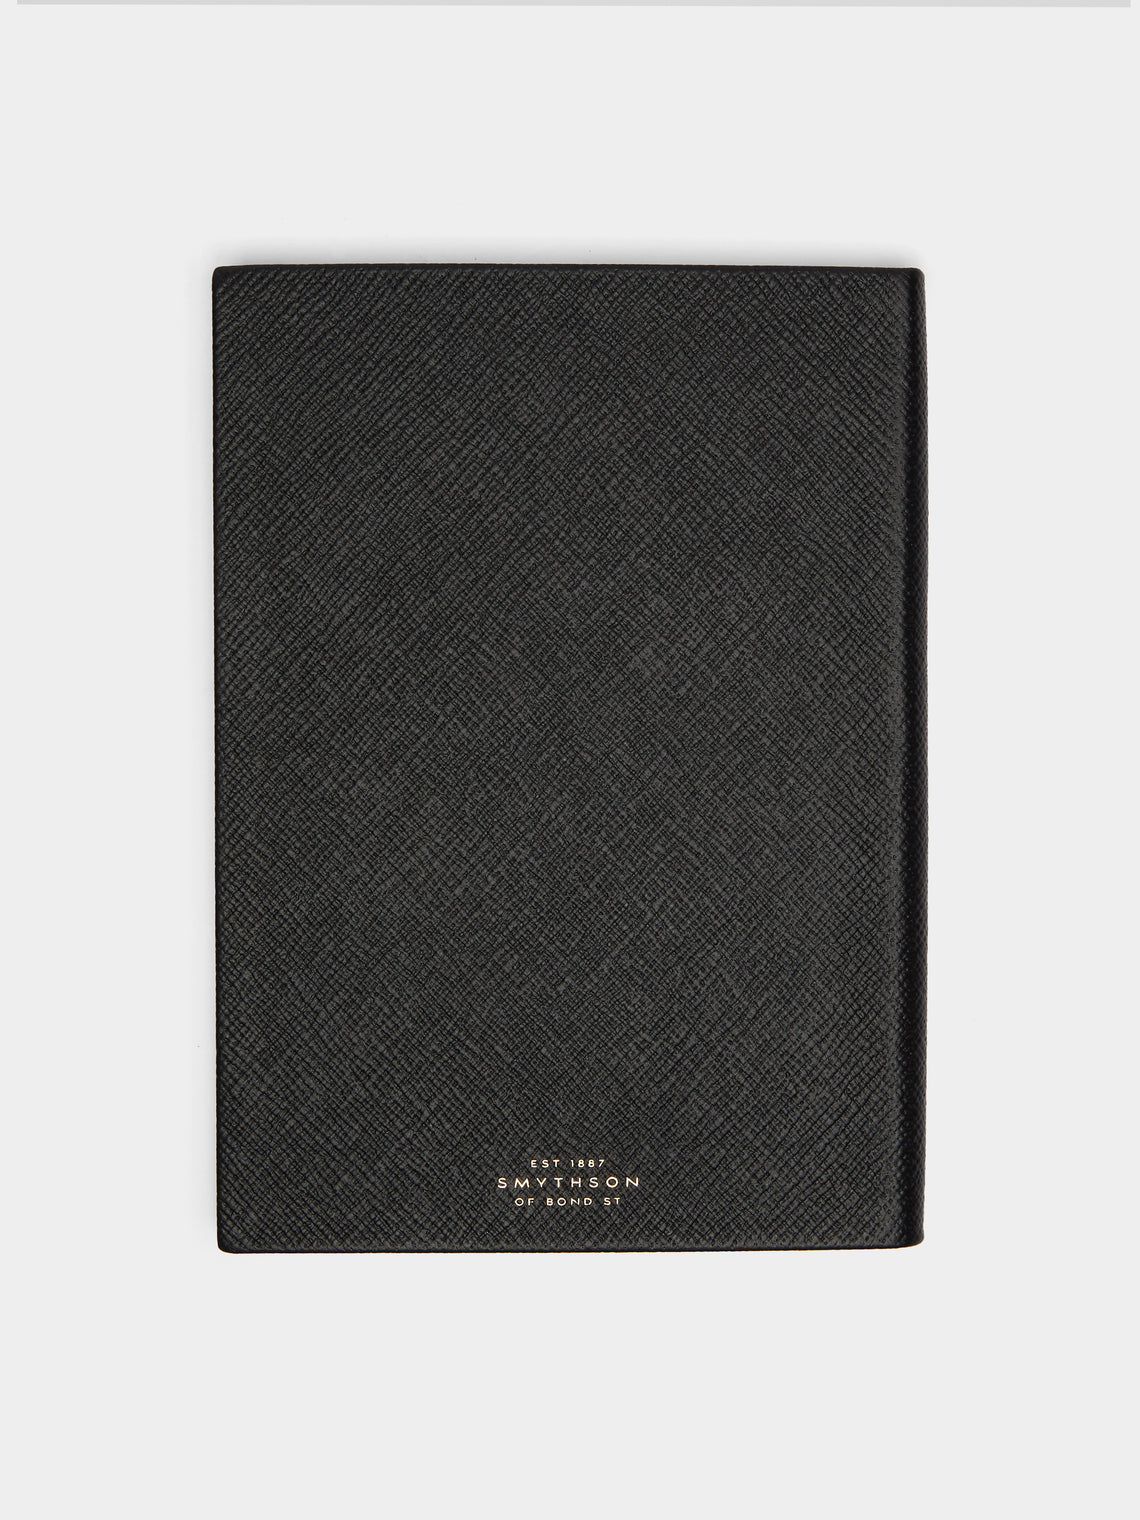 Smythson - Soho Leather Notebook - Black - ABASK